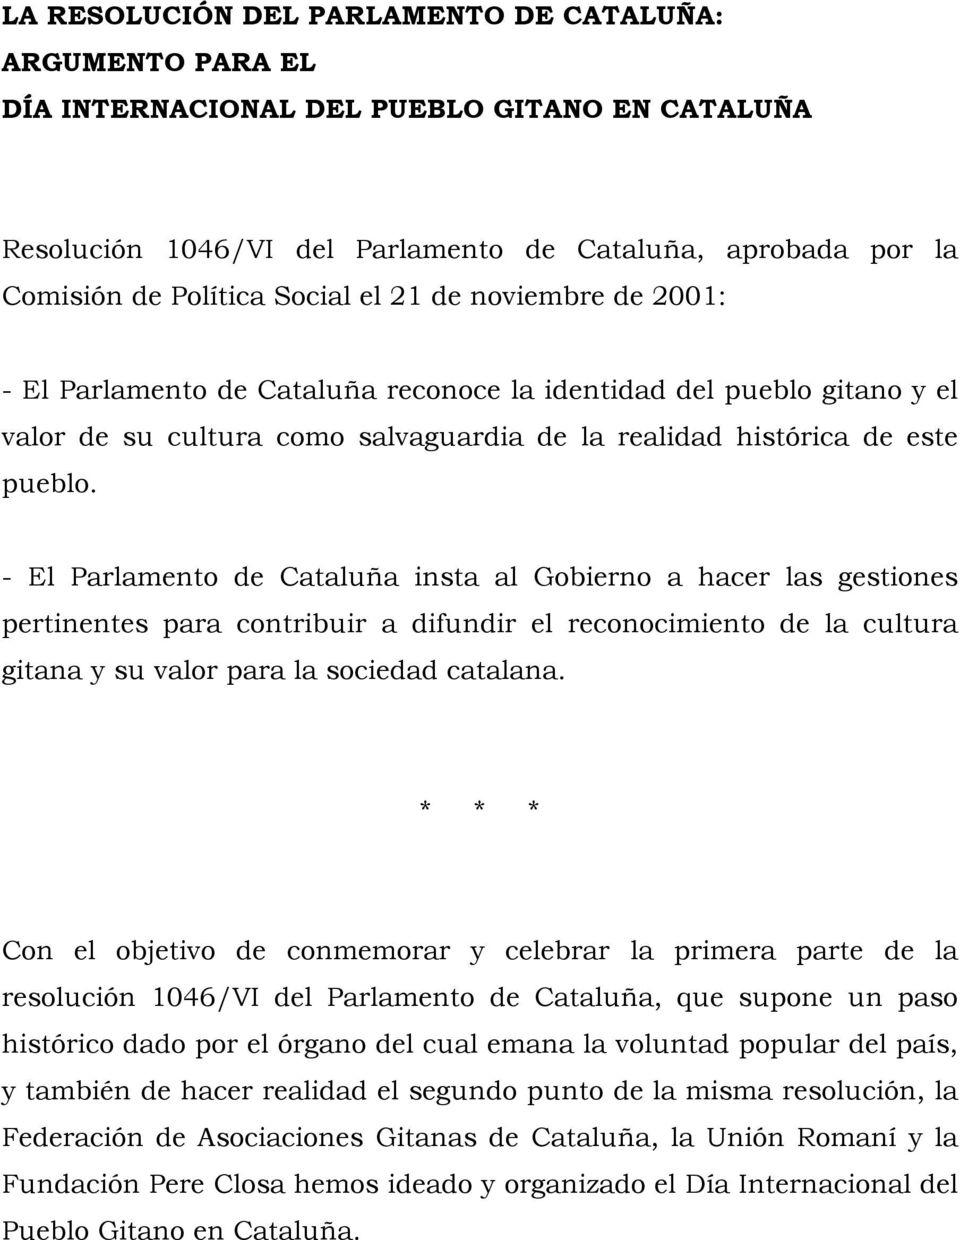 - El Parlamento de Cataluña insta al Gobierno a hacer las gestiones pertinentes para contribuir a difundir el reconocimiento de la cultura gitana y su valor para la sociedad catalana.